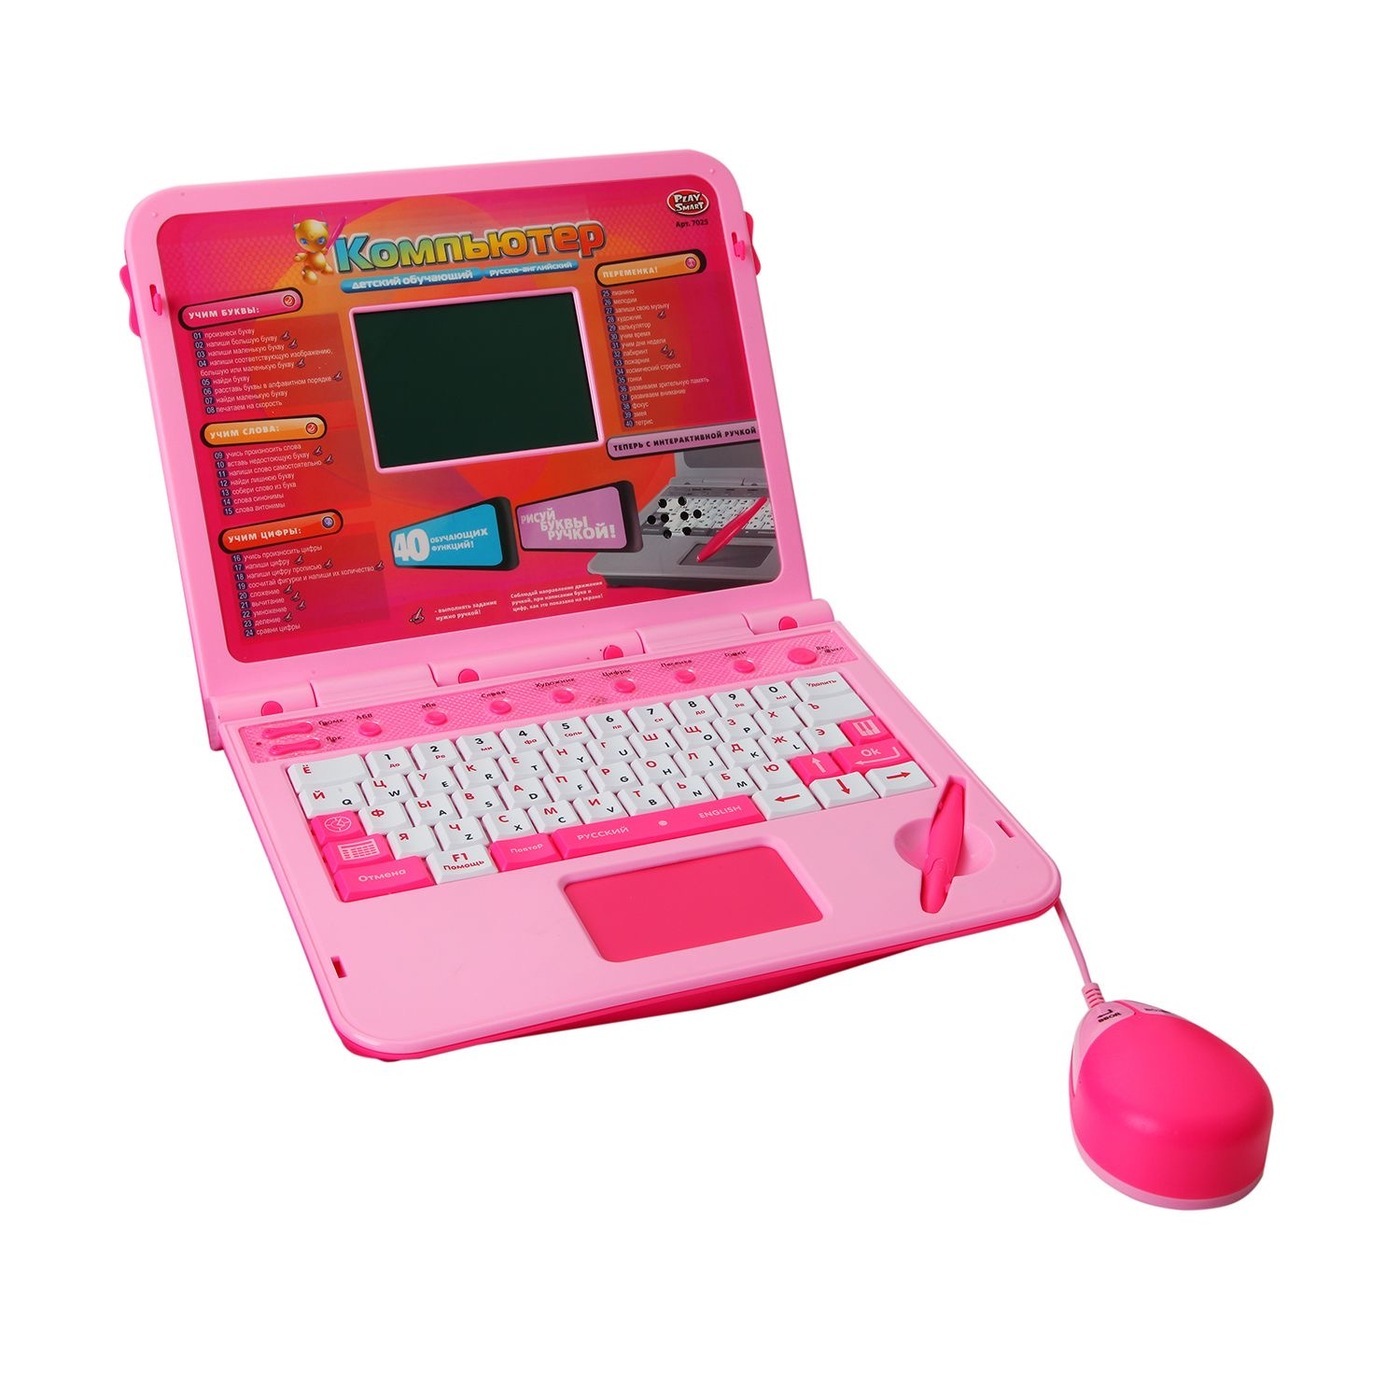 Недорогие ноутбуки для игр и учебы. Детский компьютер Joy Toy 7025. Детский обучающий компьютер Joy Toy. Детский русско-английский обучающий компьютер (Joy Toy 7160). Компьютер детский Joy Toy 48039.